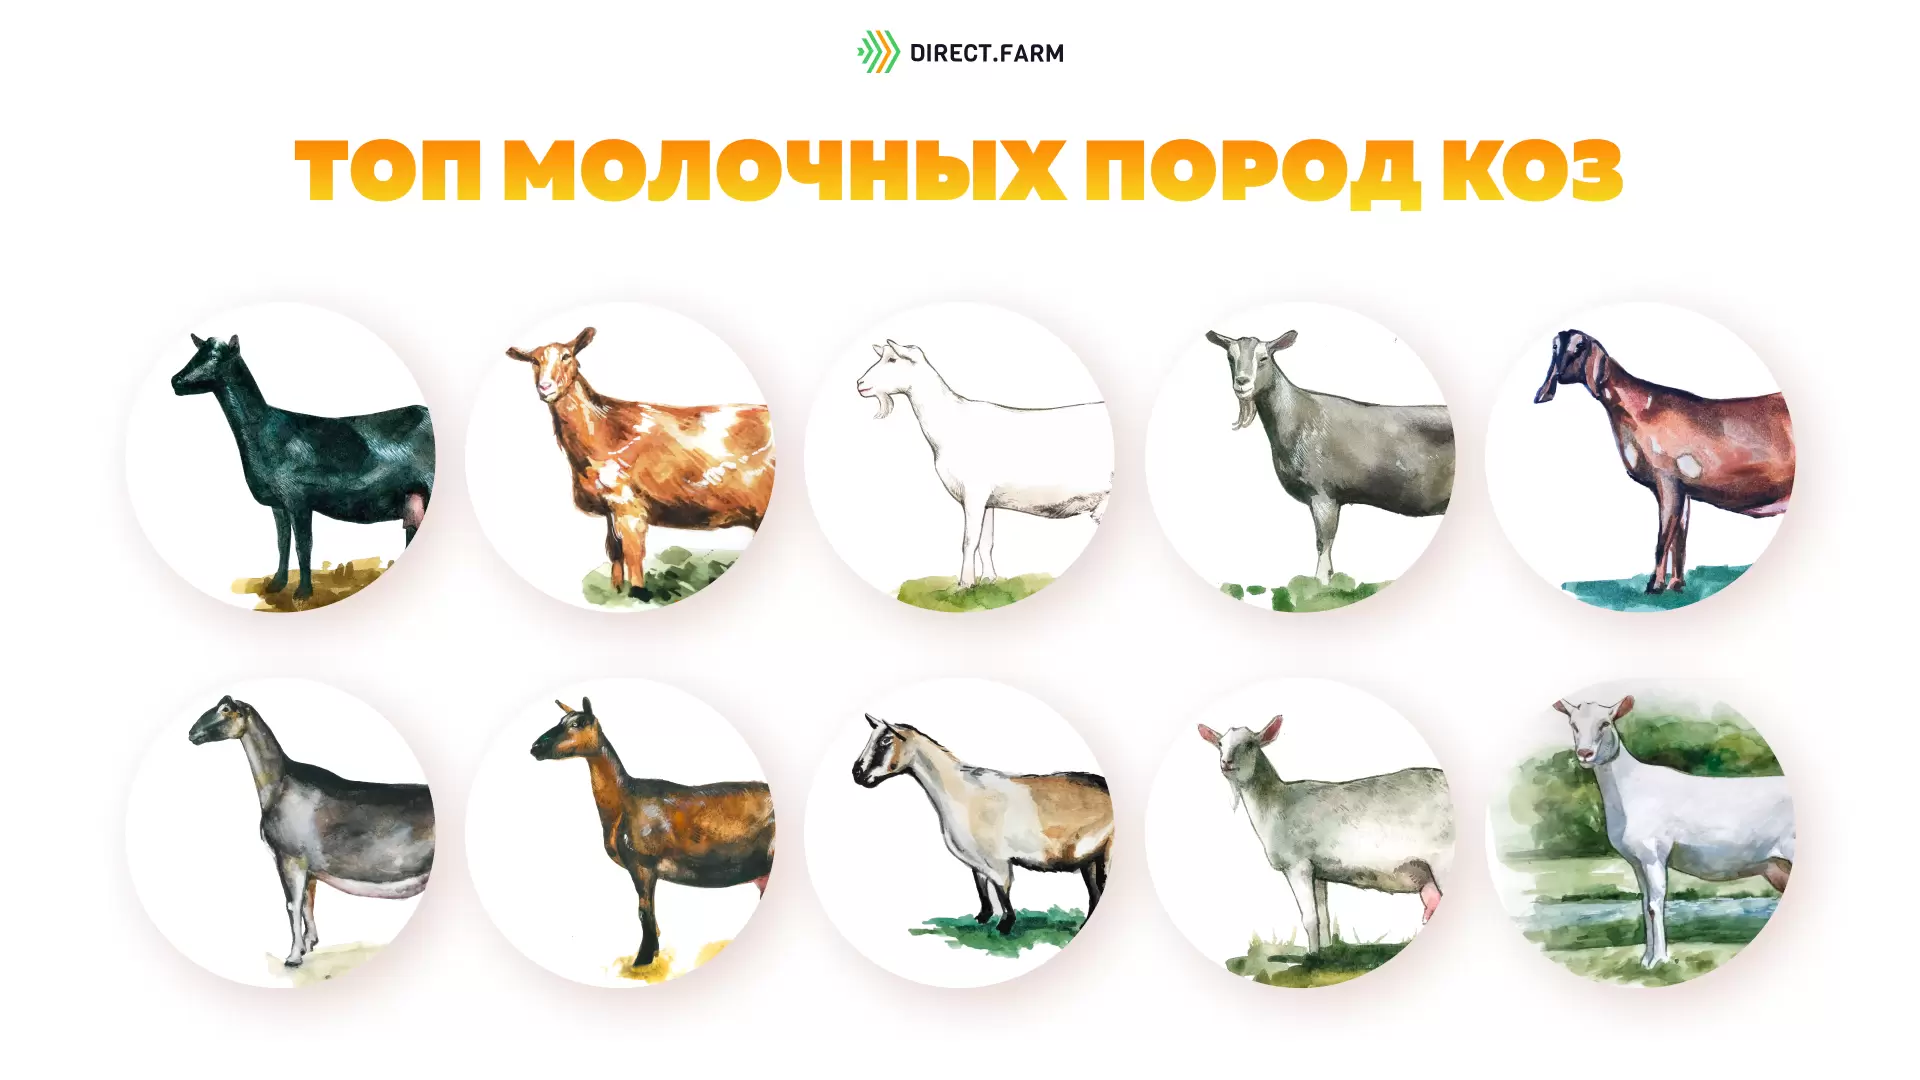 ТОП самых высокопродуктивных молочных пород коз